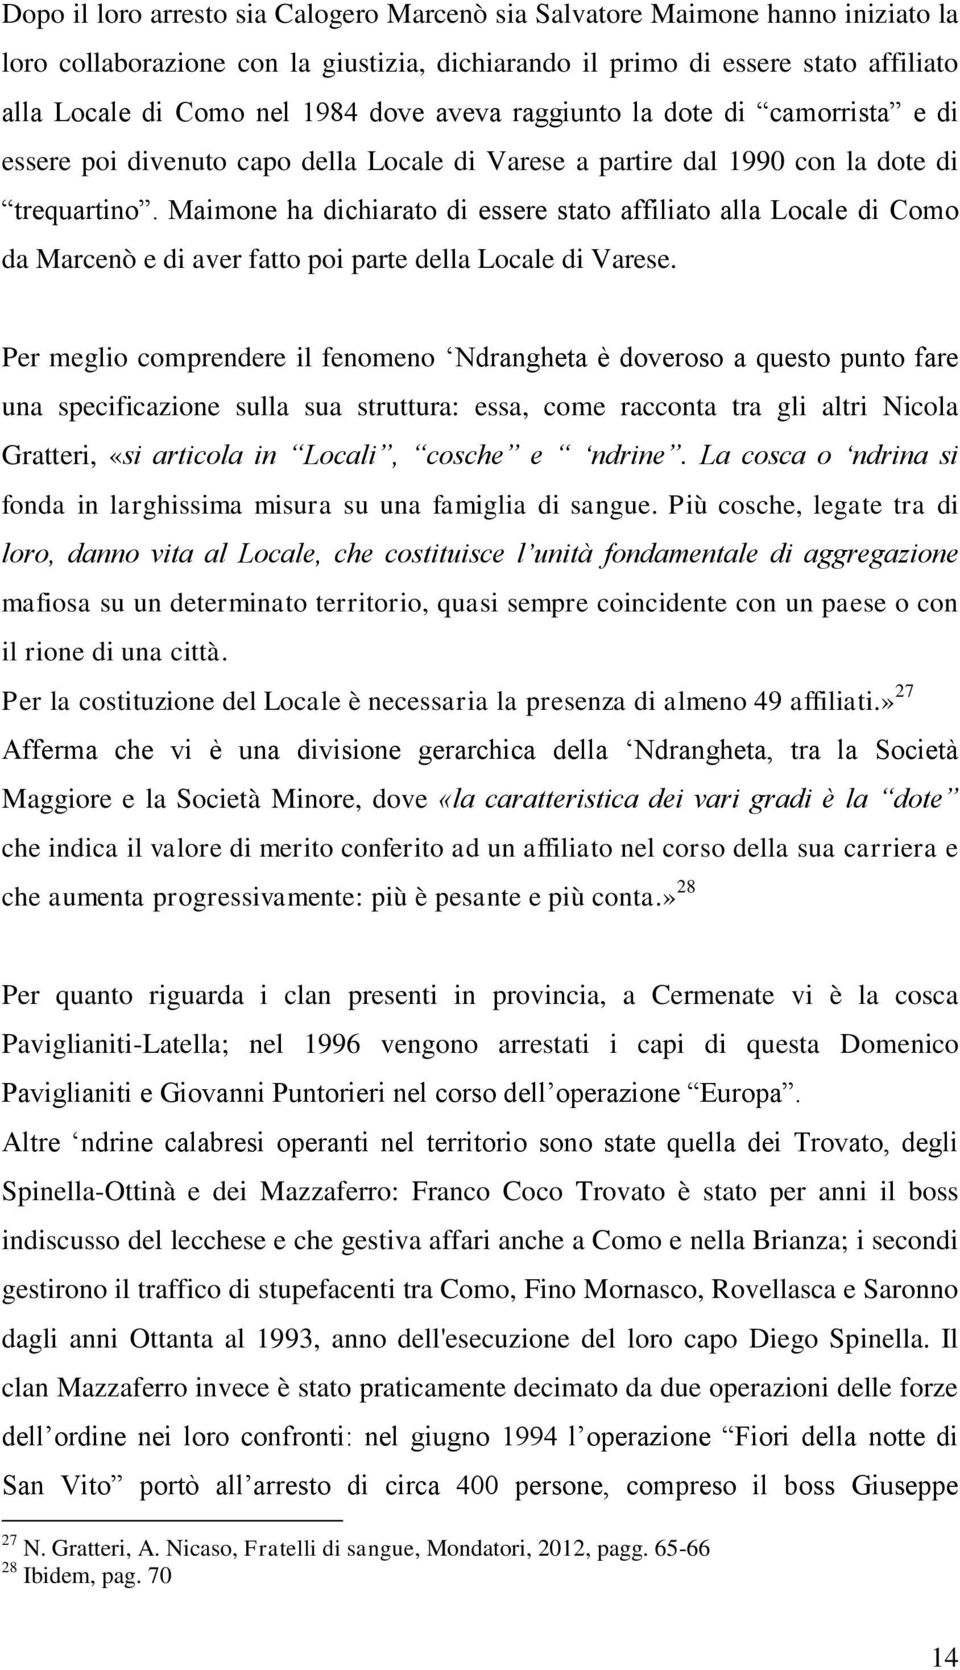 Maimone ha dichiarato di essere stato affiliato alla Locale di Como da Marcenò e di aver fatto poi parte della Locale di Varese.